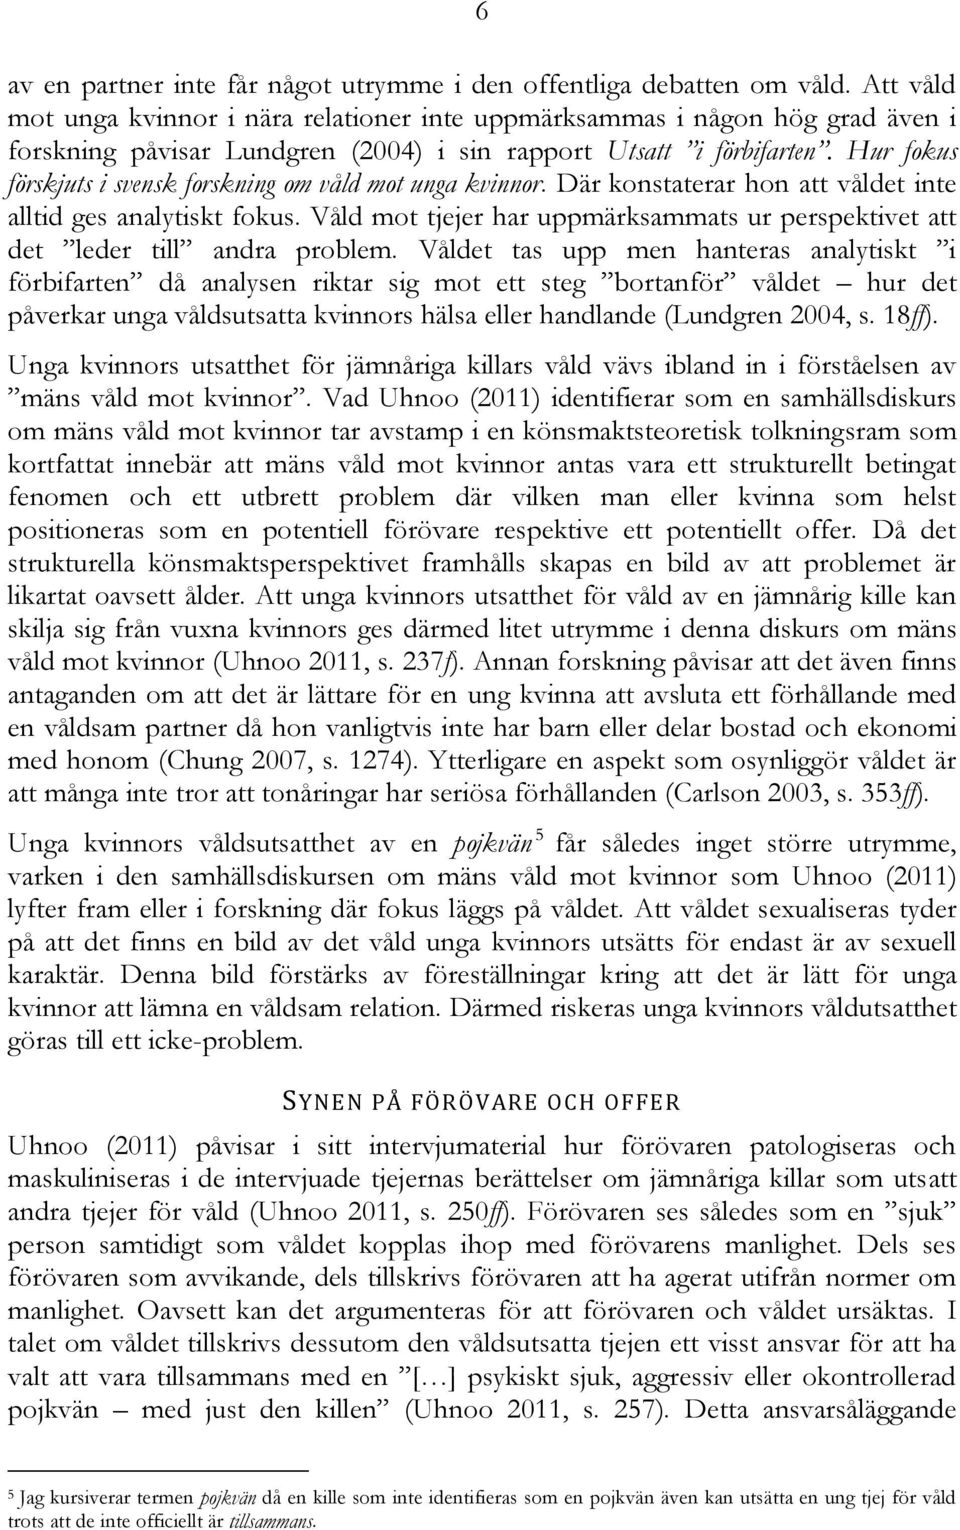 Hur fokus förskjuts i svensk forskning om våld mot unga kvinnor. Där konstaterar hon att våldet inte alltid ges analytiskt fokus.